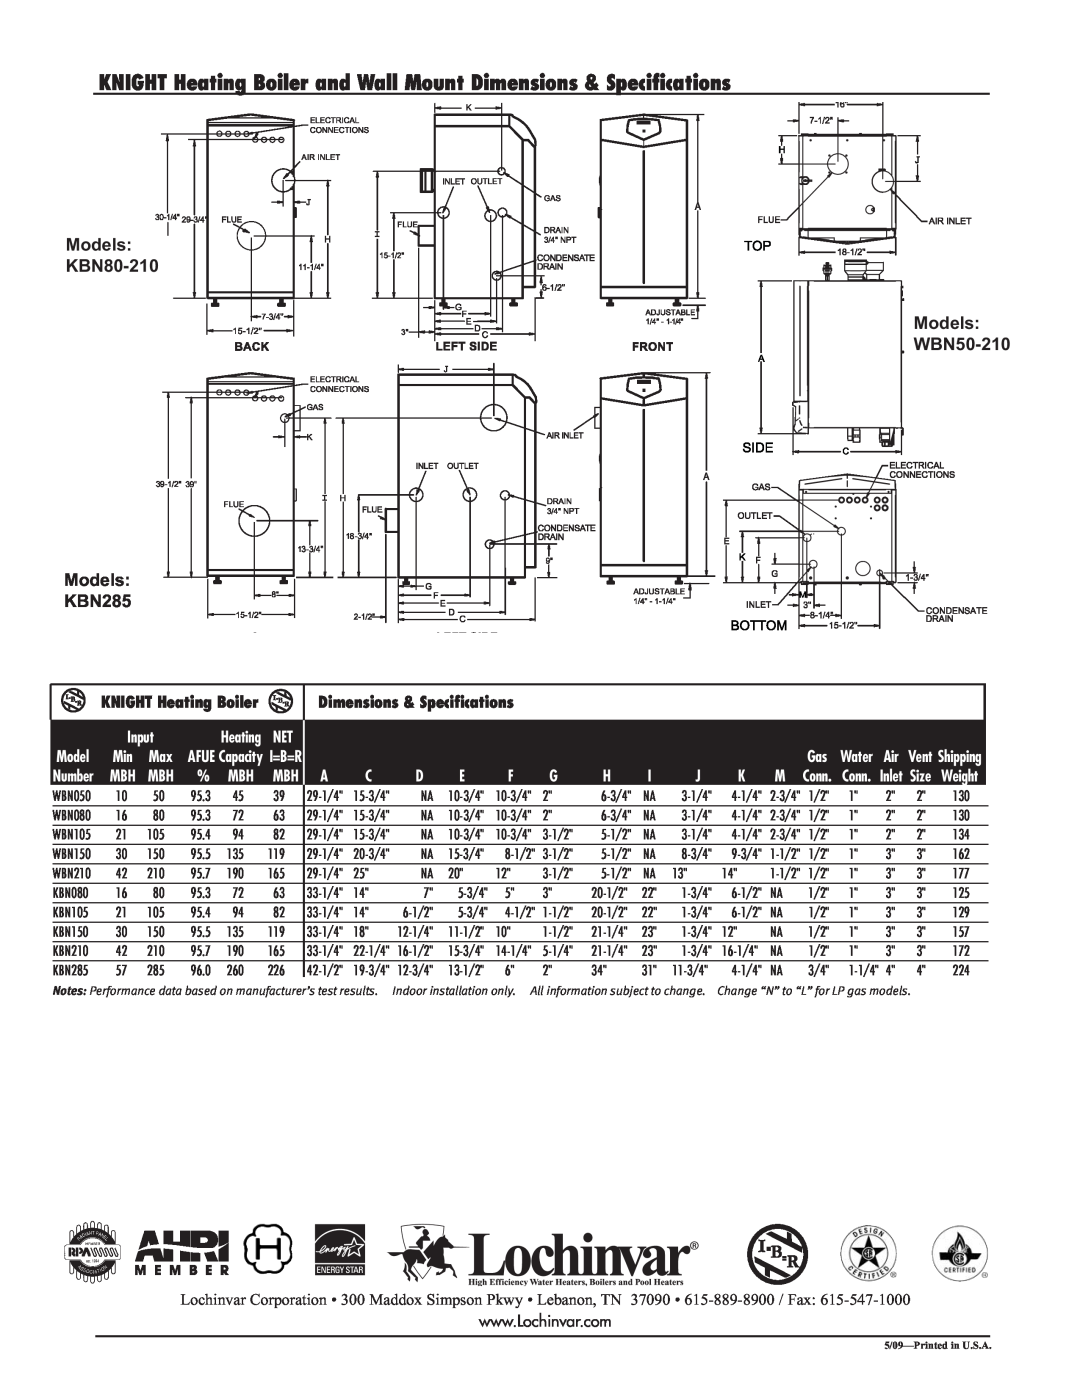 Lochinvar KBN-SUB-09 Models KBN80-210 Models WBN50-210, Models KBN285, KNIGHT Heating Boiler, Dimensions & Specifications 